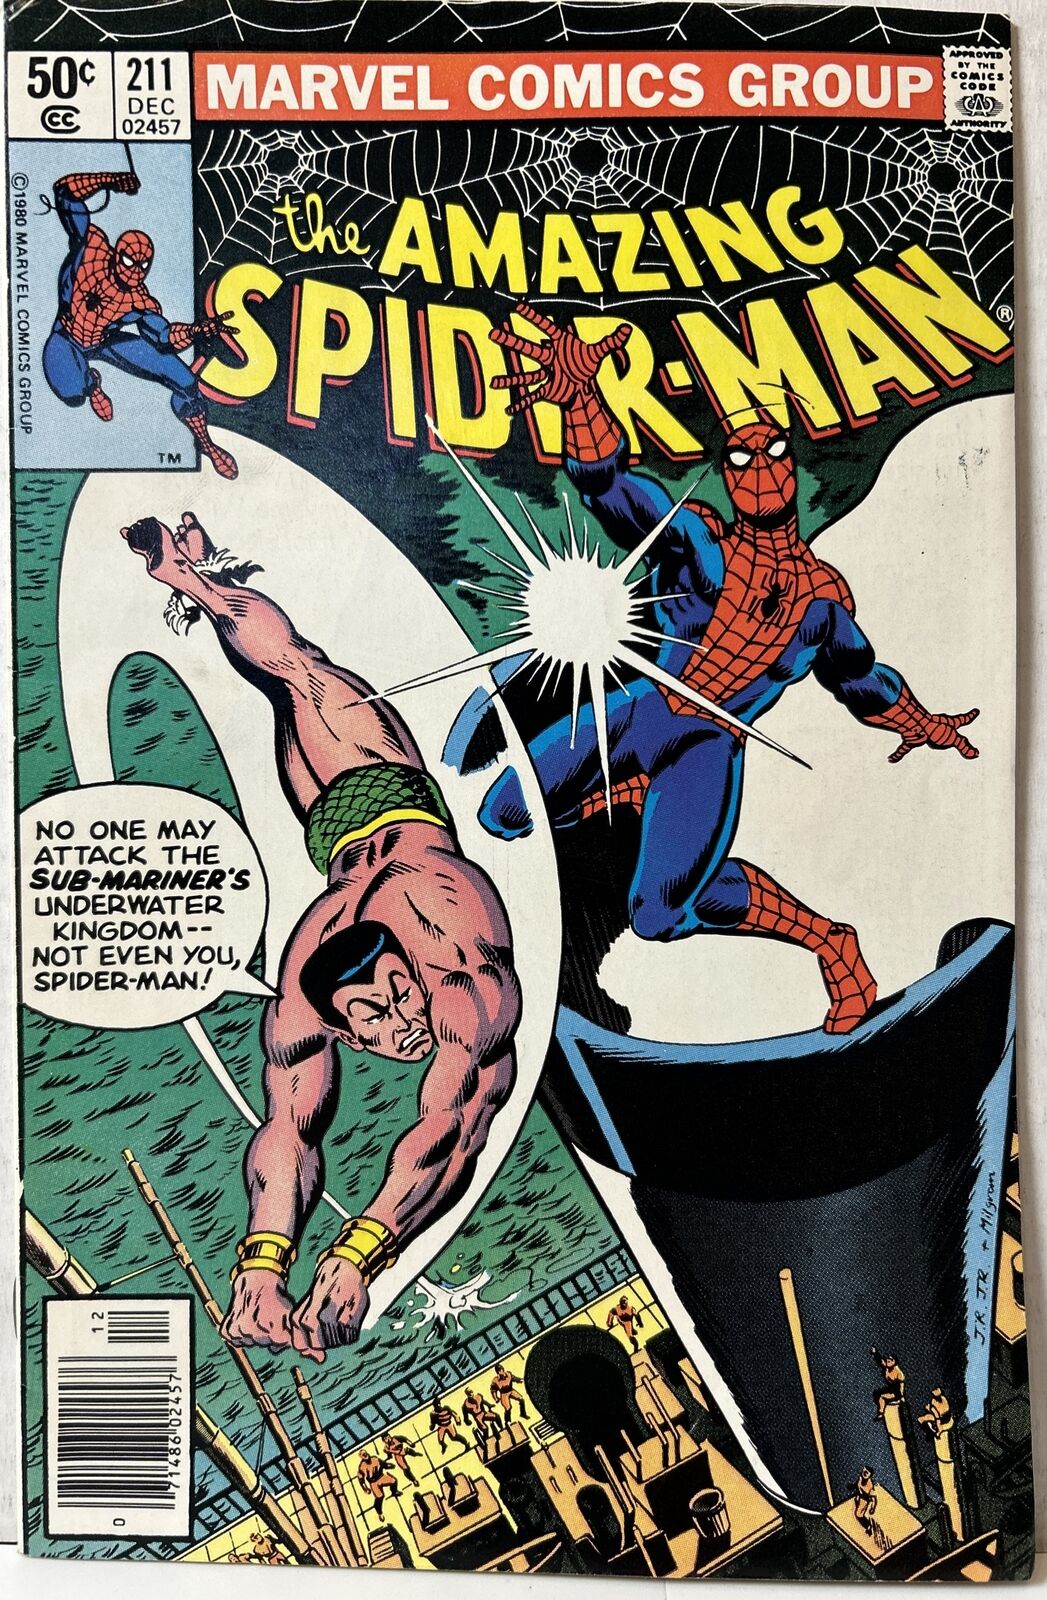 The Amazing Spider-Man #211 Dec 1980 Namor Sub-Mariner Classic Cover *FN+*